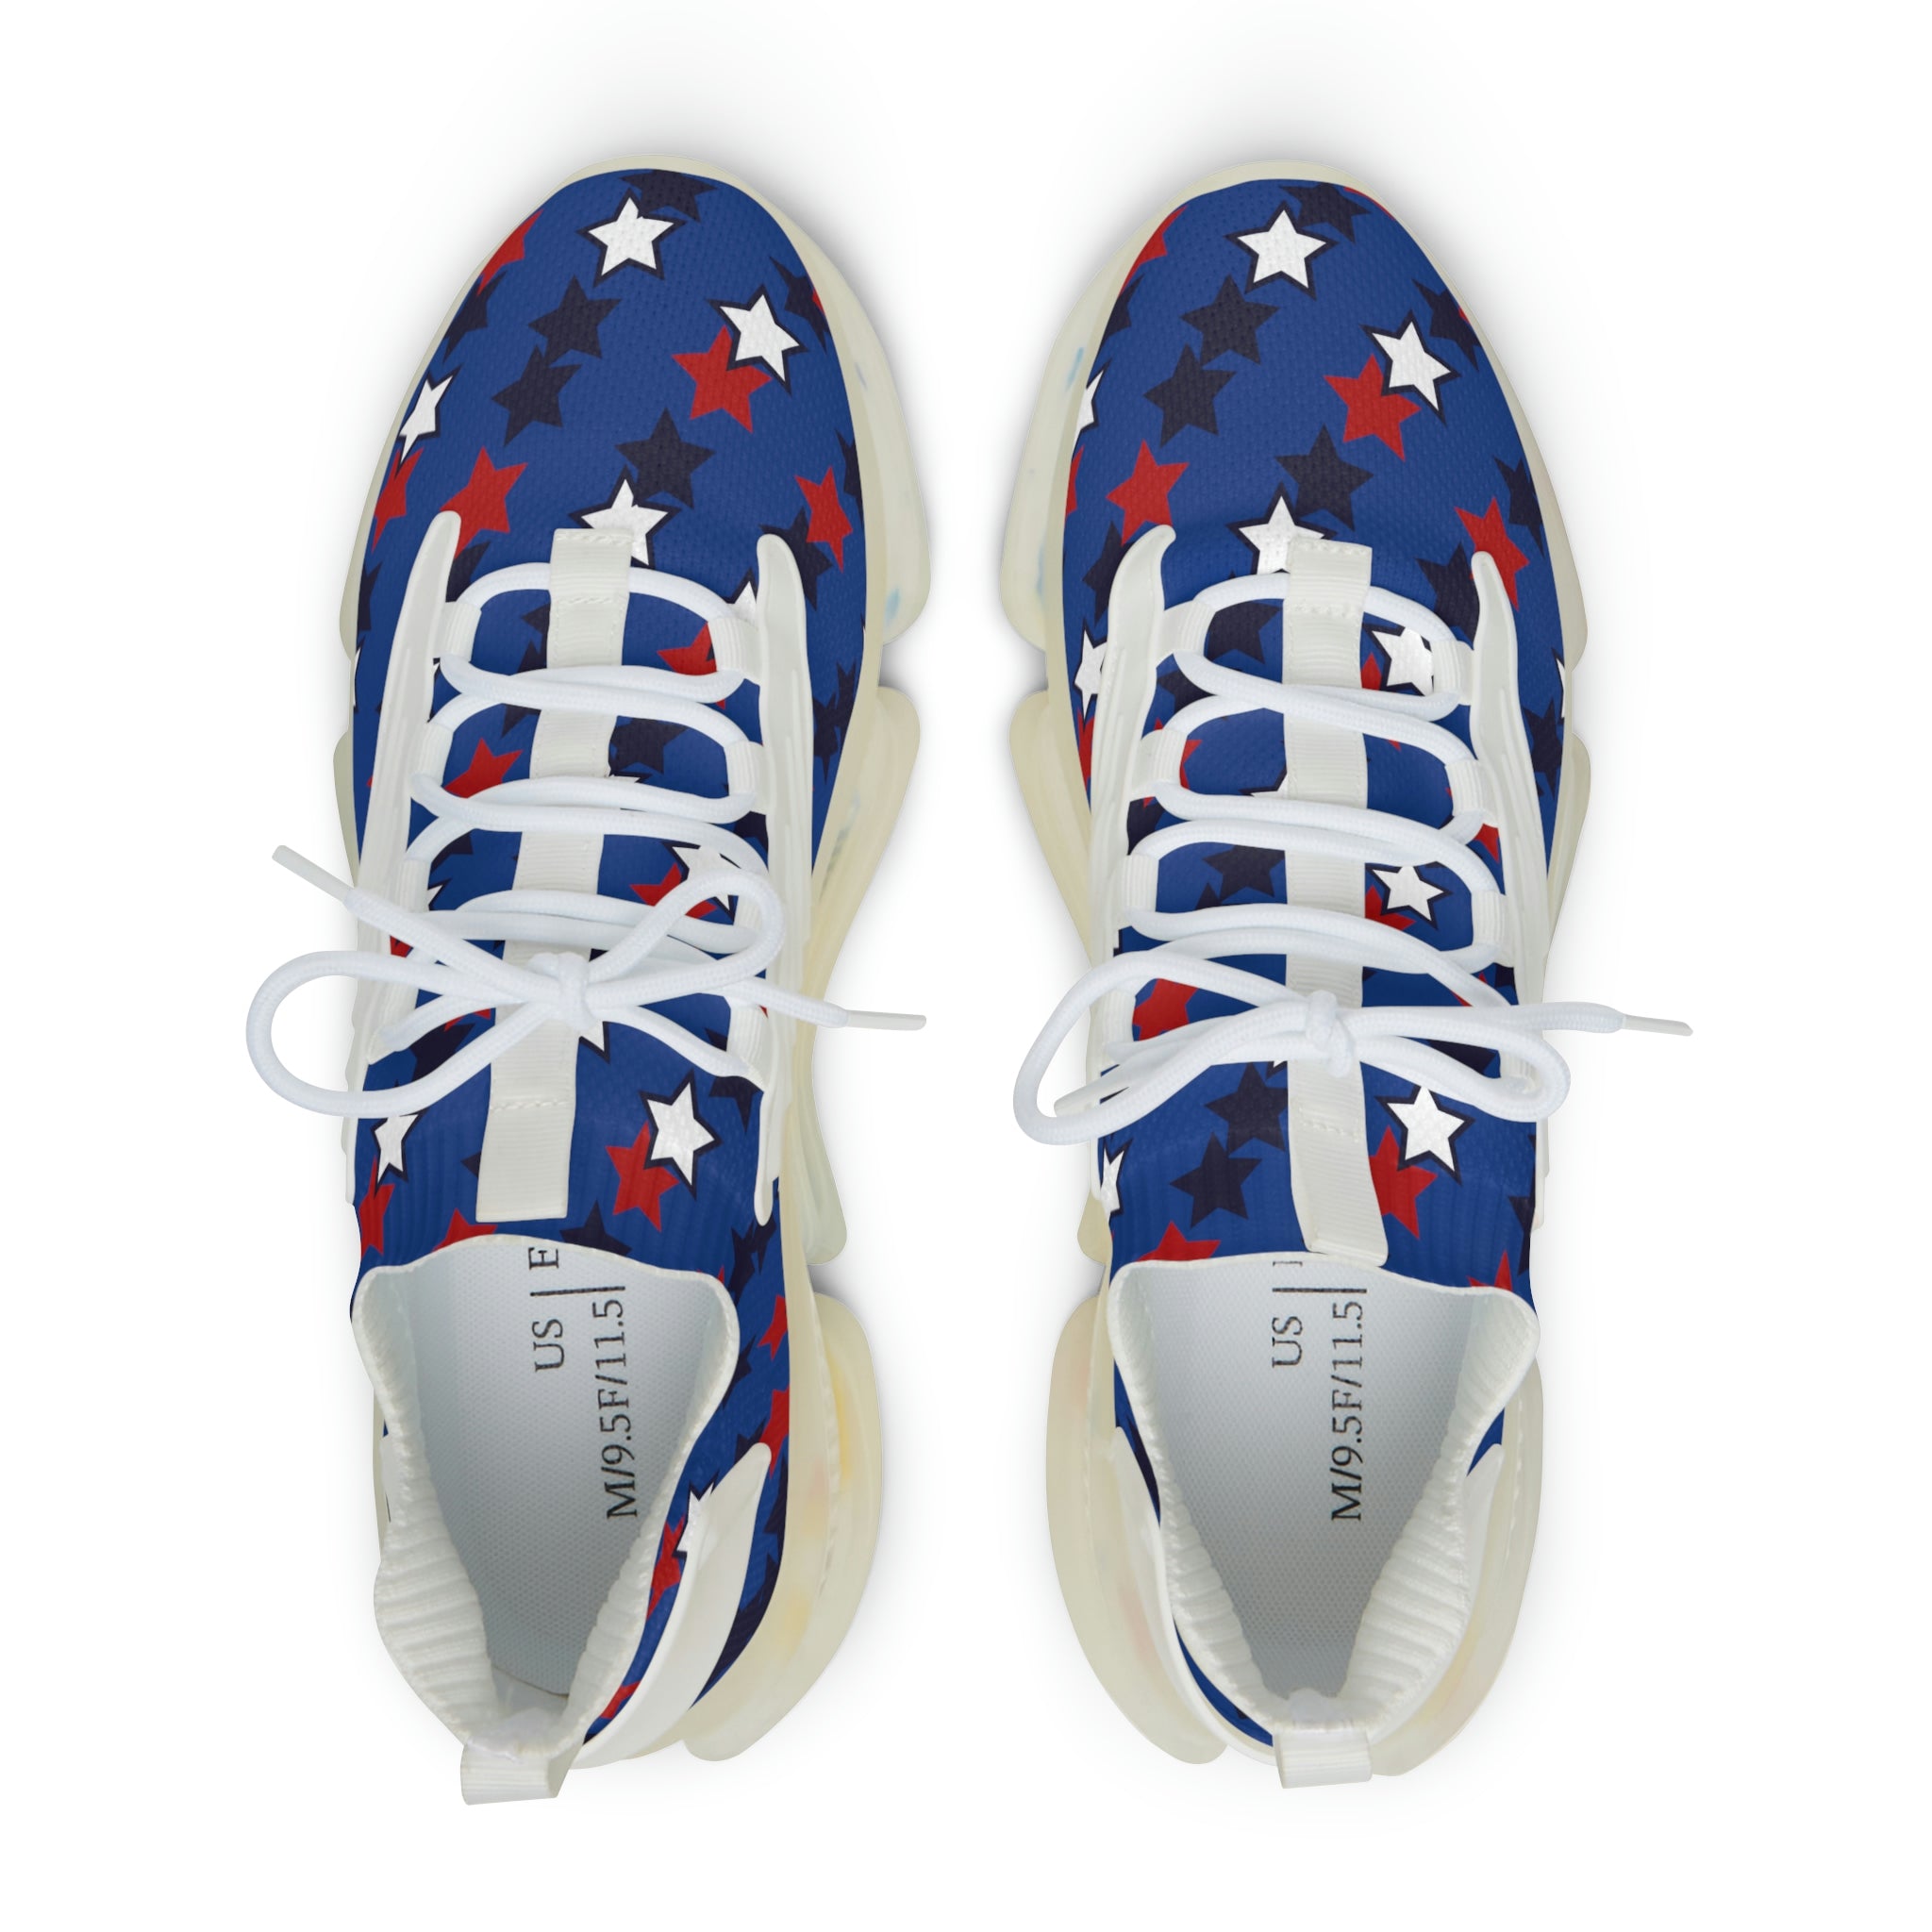 Blue Starboy OTT Men's Mesh Knit Sneakers